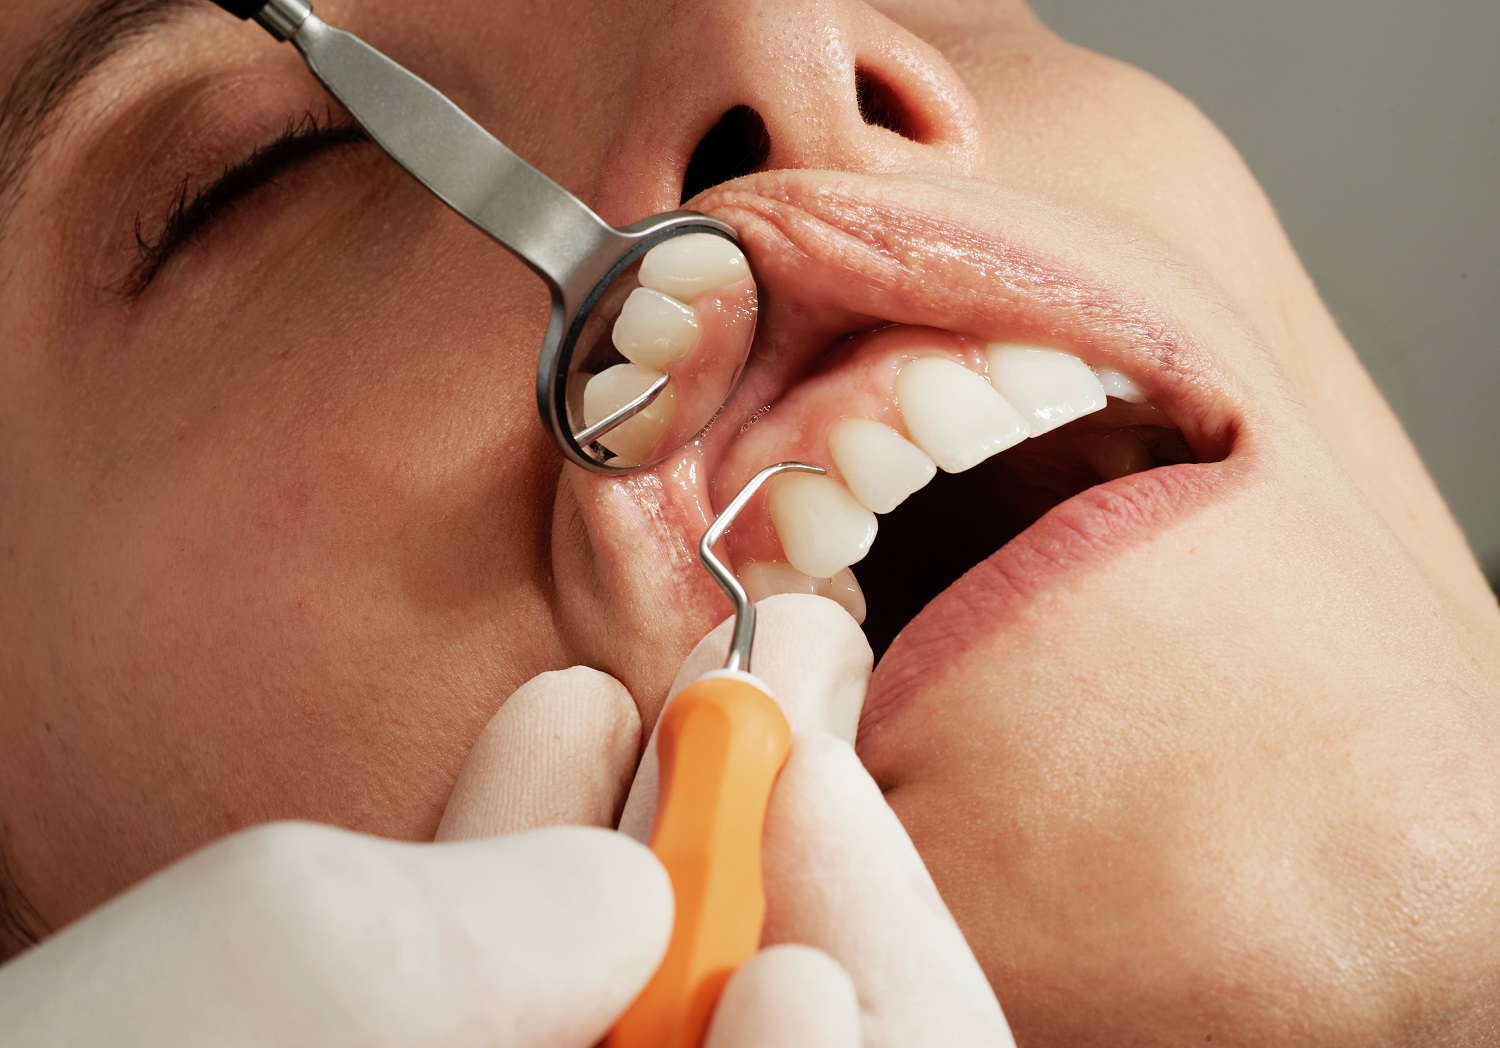 Gydytoja odontologė – apie dantų implantaciją: platesnė šypsena gali atnešti teigiamų pokyčių gyvenime